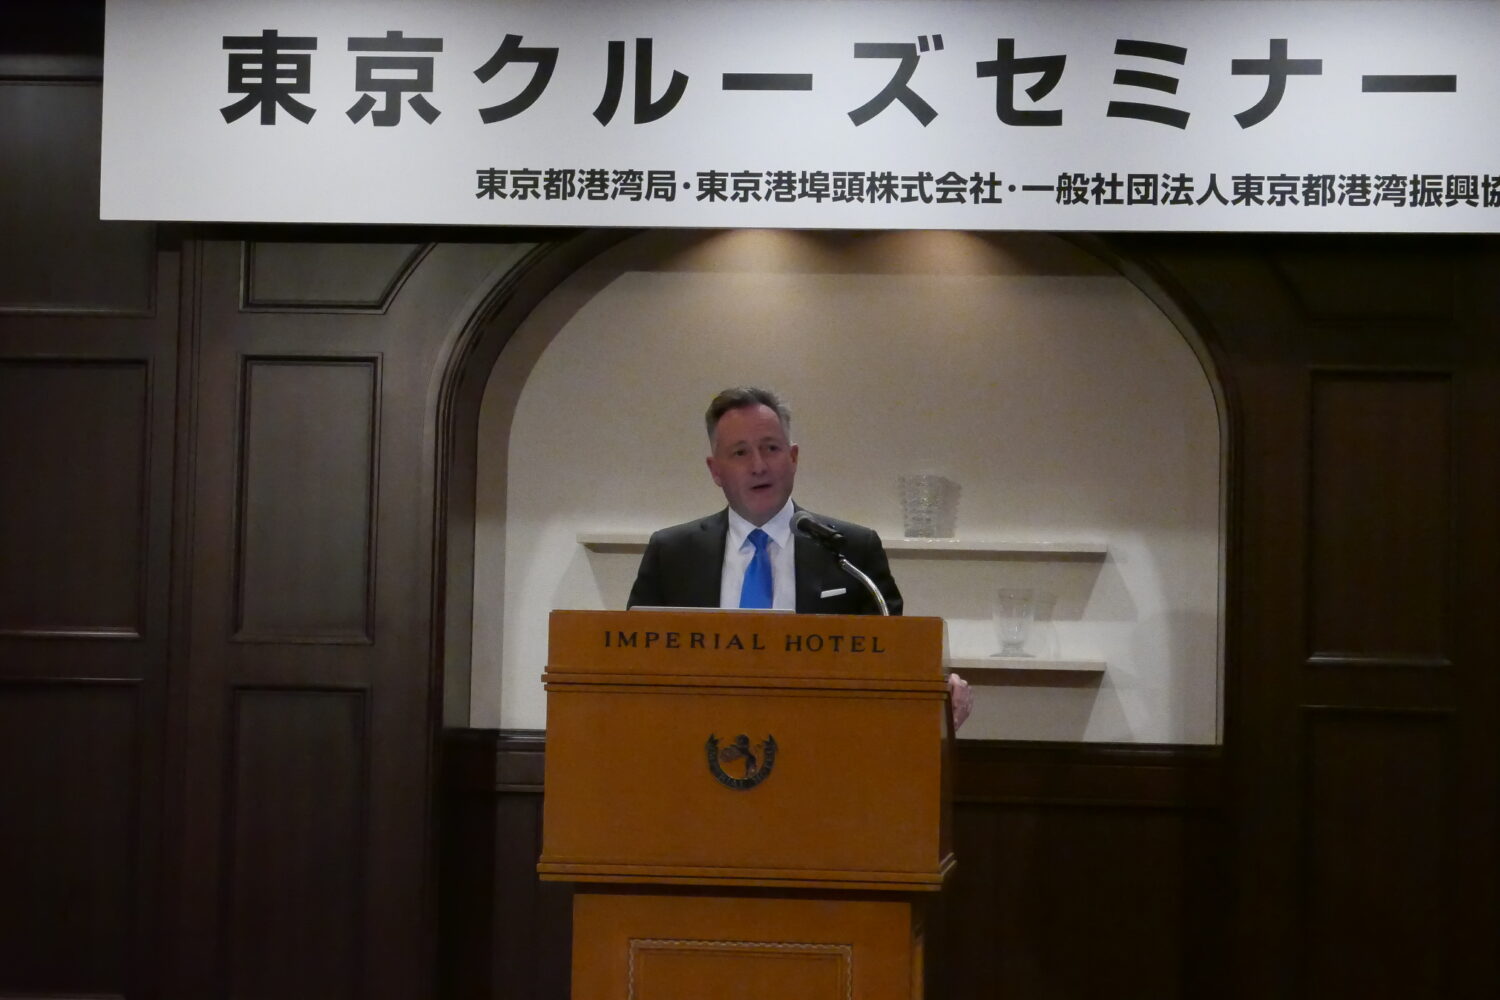 東京都、5年ぶりクルーズセミナー開催、MOLカウフマン氏講演も